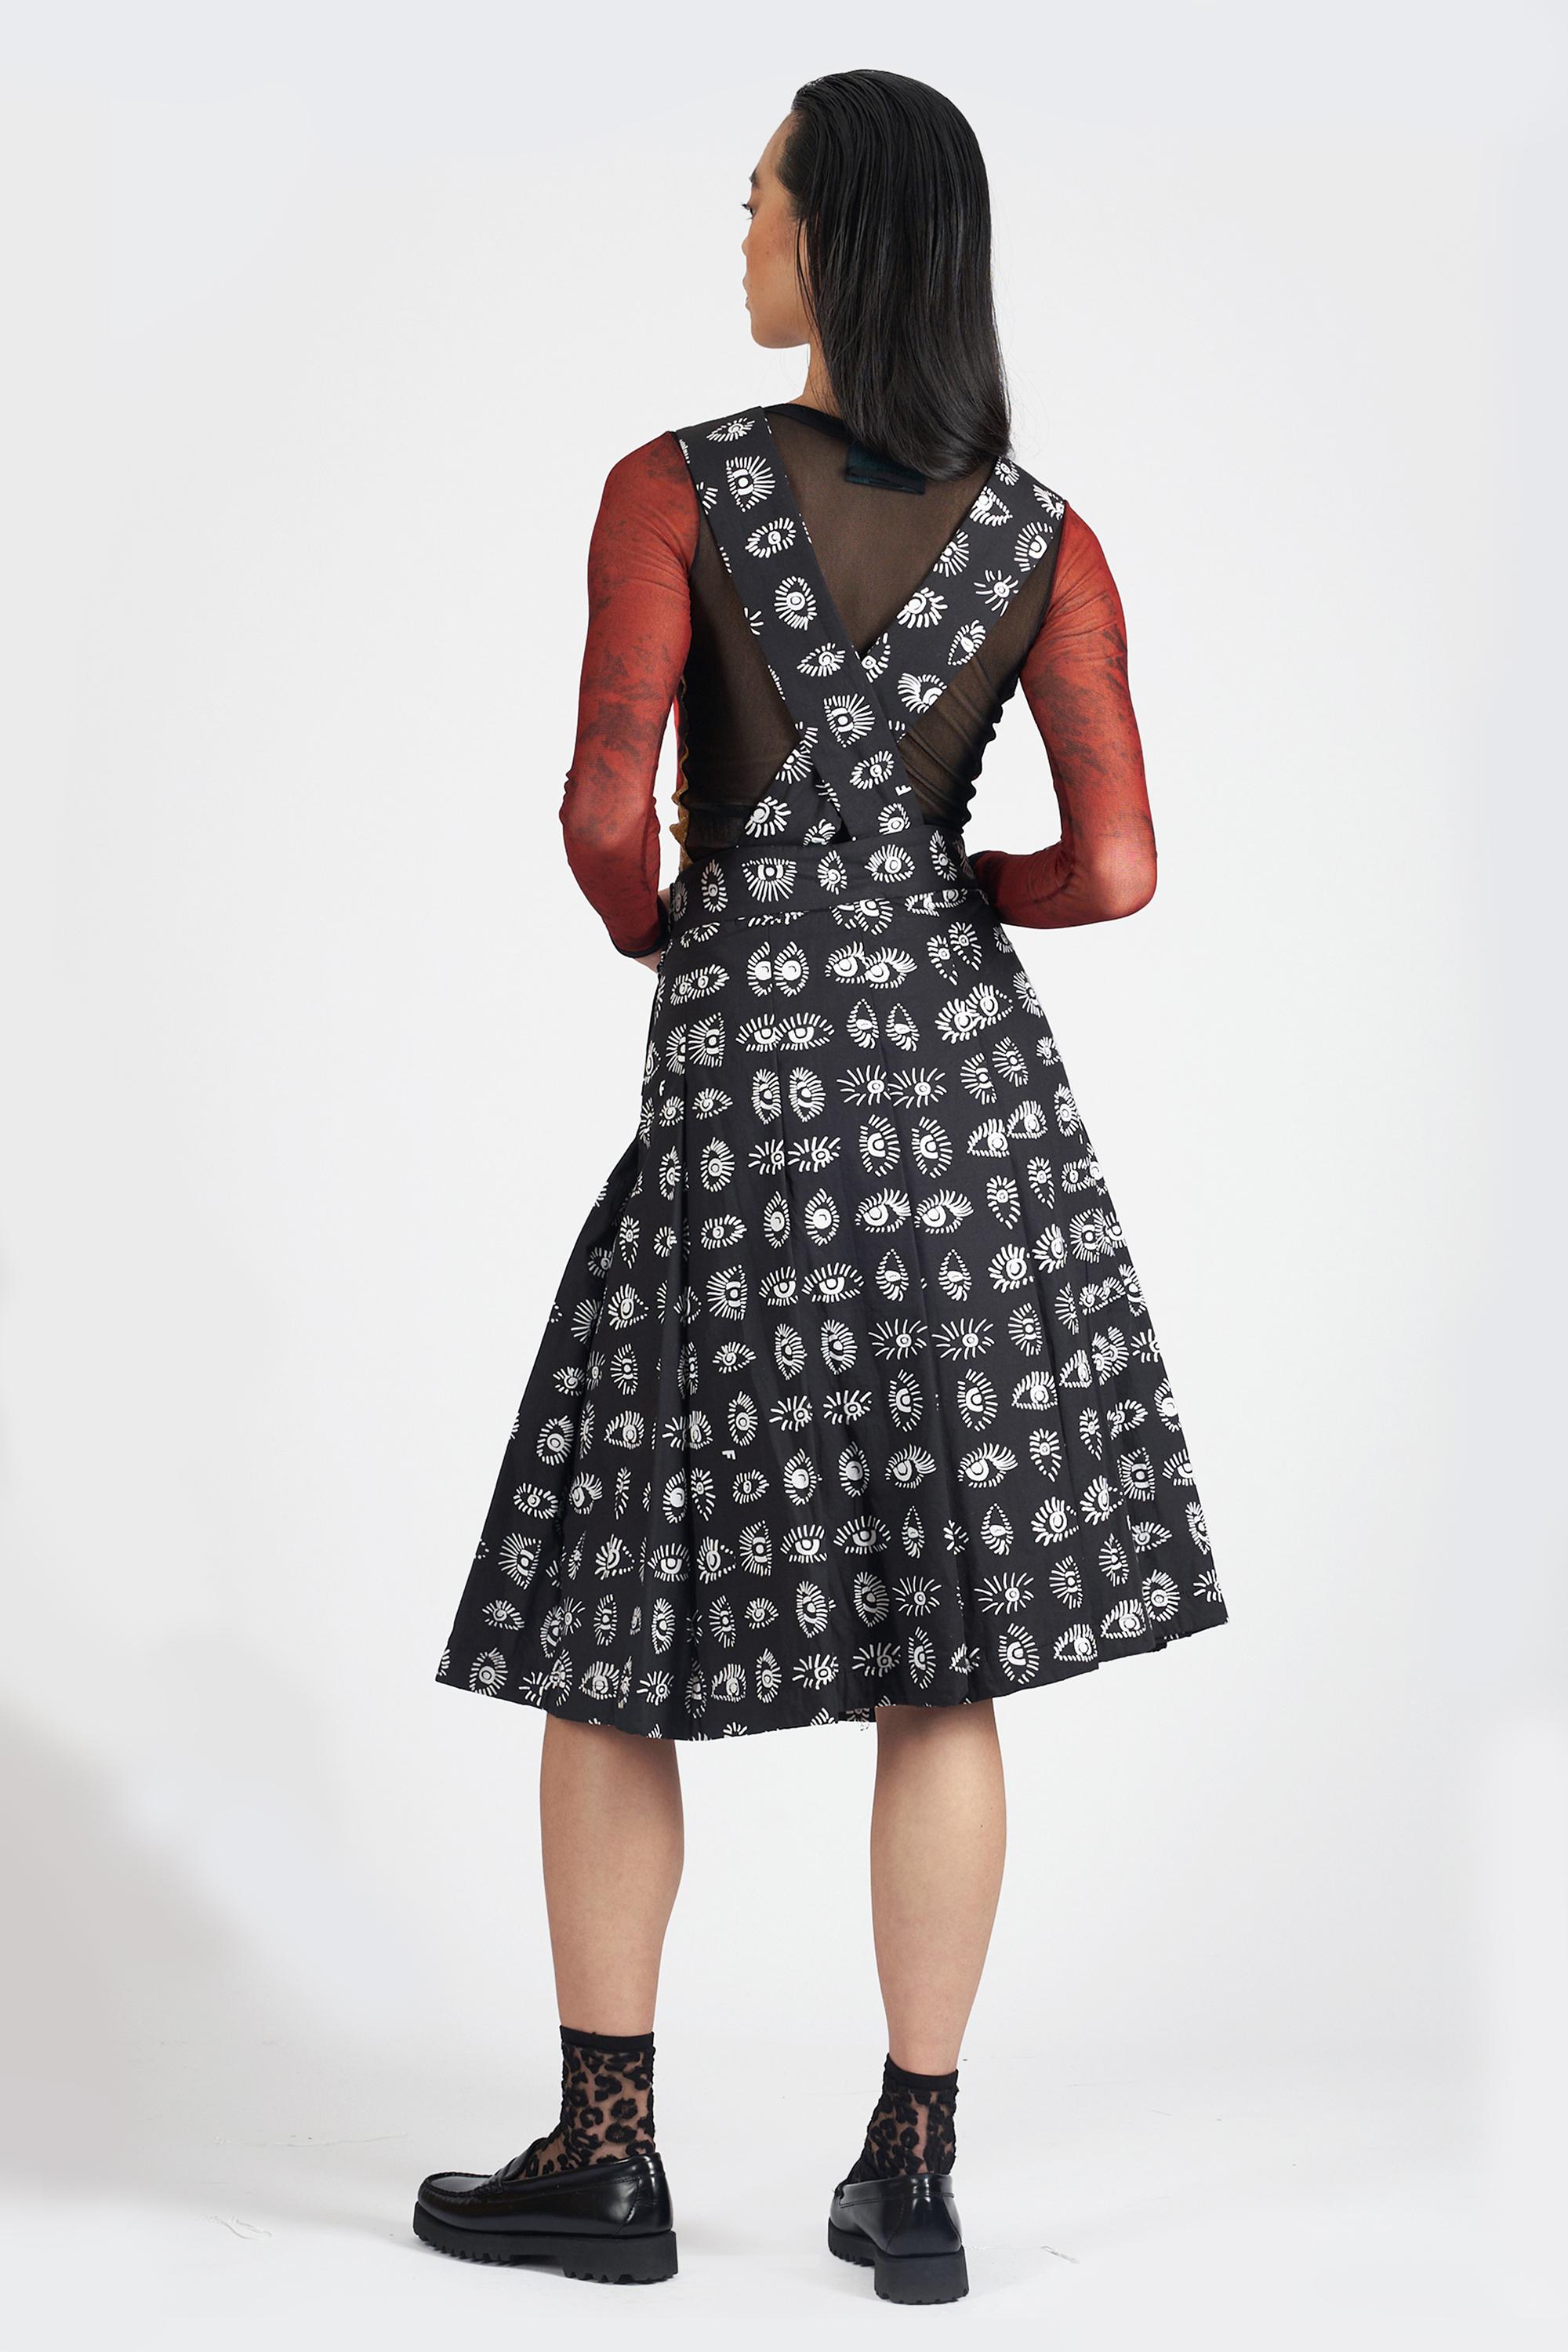 Nous sommes ravis de vous présenter cette robe salopette Comme Des Garçons 2015. Encolure carrée, dos croisé, fermeture latérale zippée et boutonnée, motif en forme d'œil et longueur midi. Vintage, en excellent état.
Authenticité garantie.

Taille